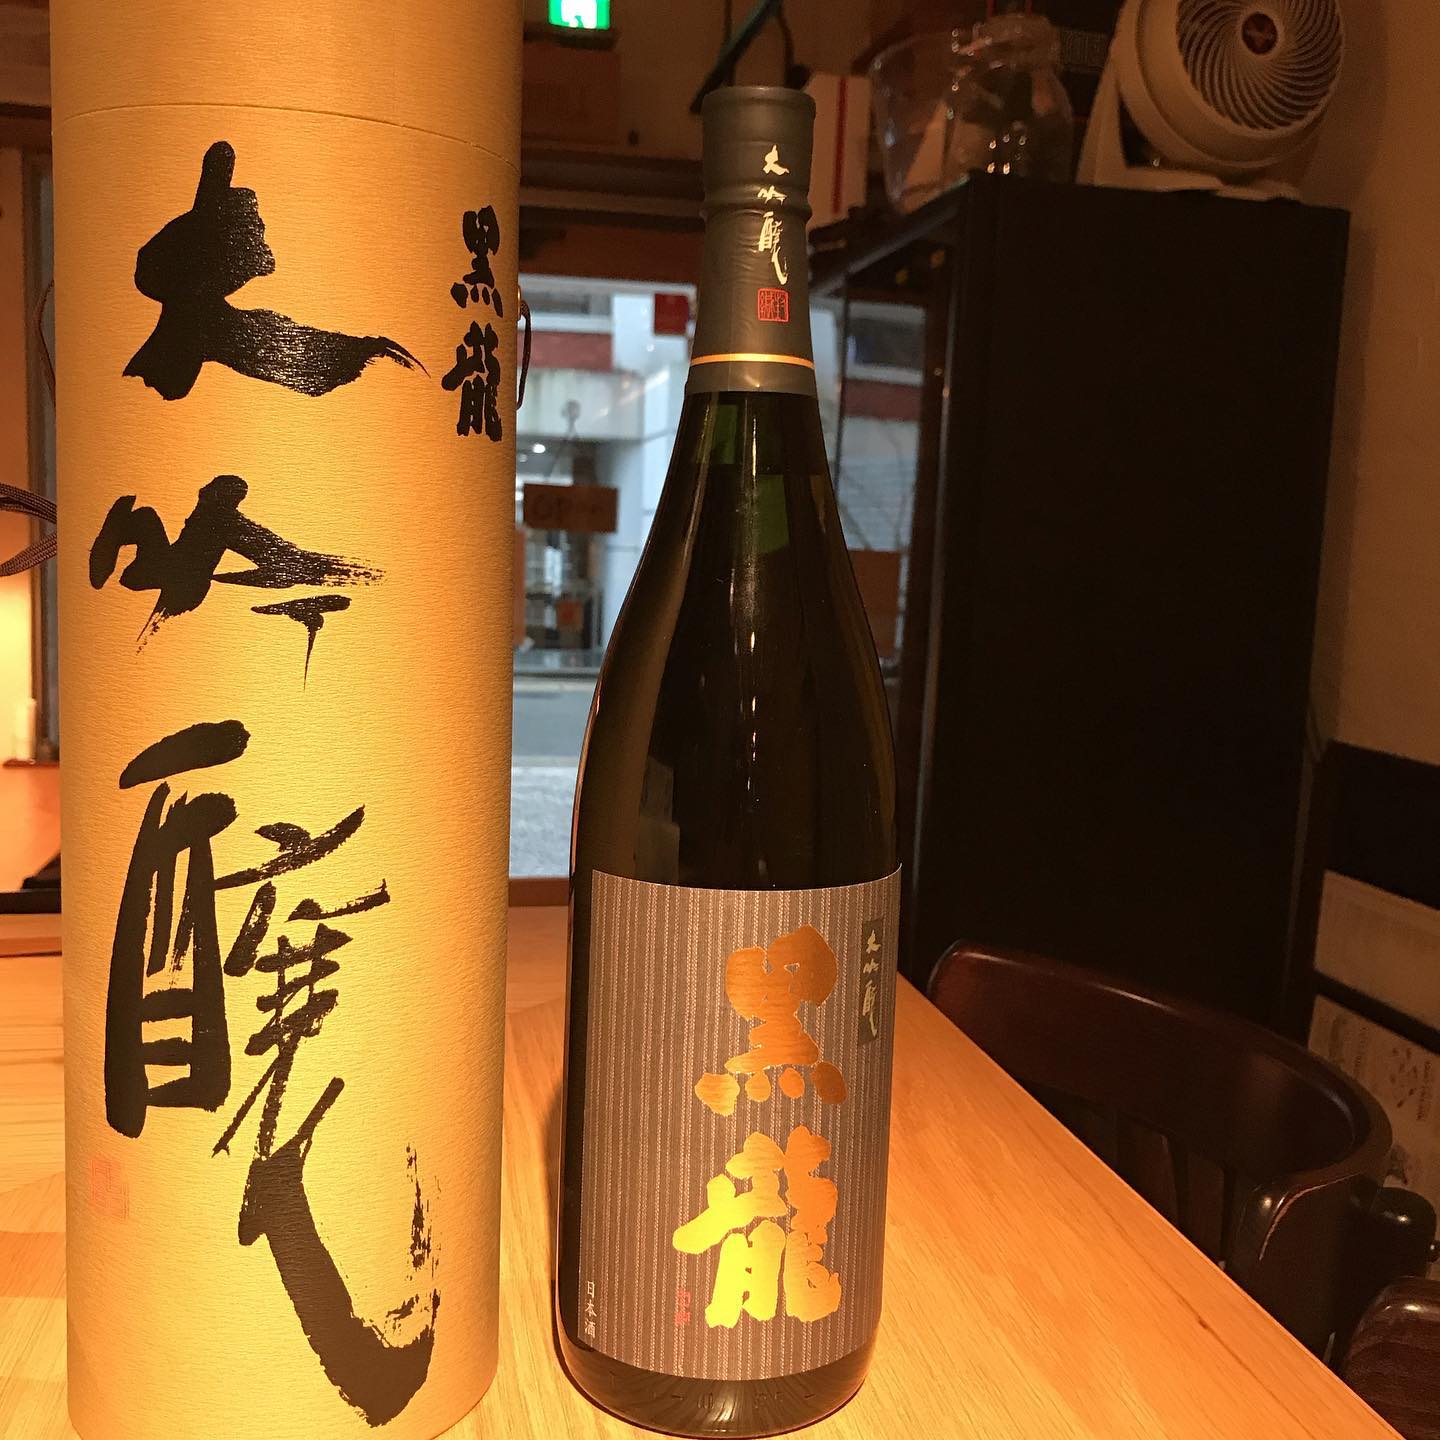 今日から日本酒のお品書きがいろいろと変わります。黒龍@福井の大吟醸が仲間入りです。#イルフェソワフ #ワイン#日本酒 #薬院#警固#黒龍